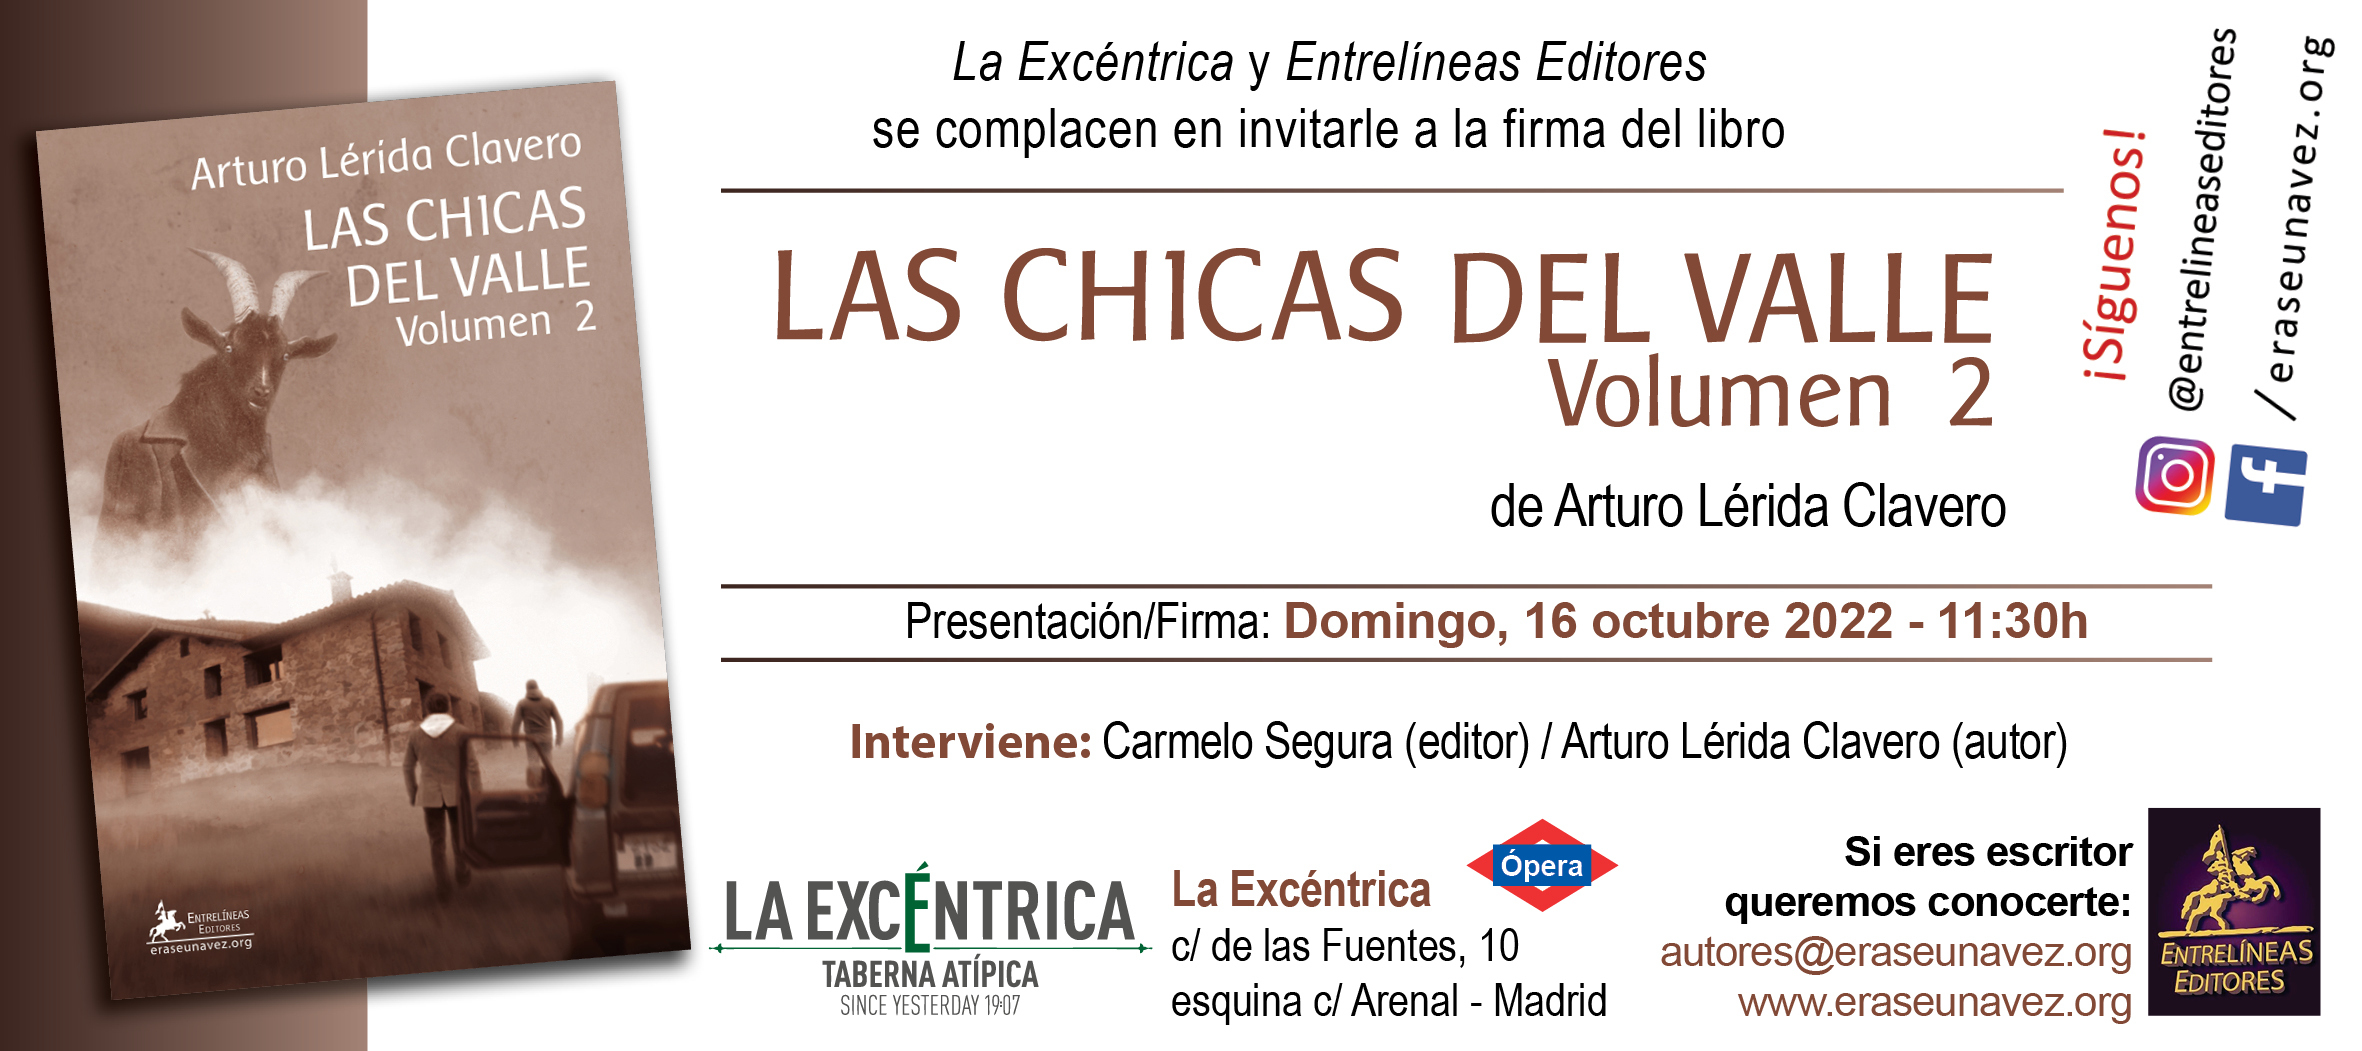 2022-10-16_-_Las_chicas_del_valle_-_invitacion